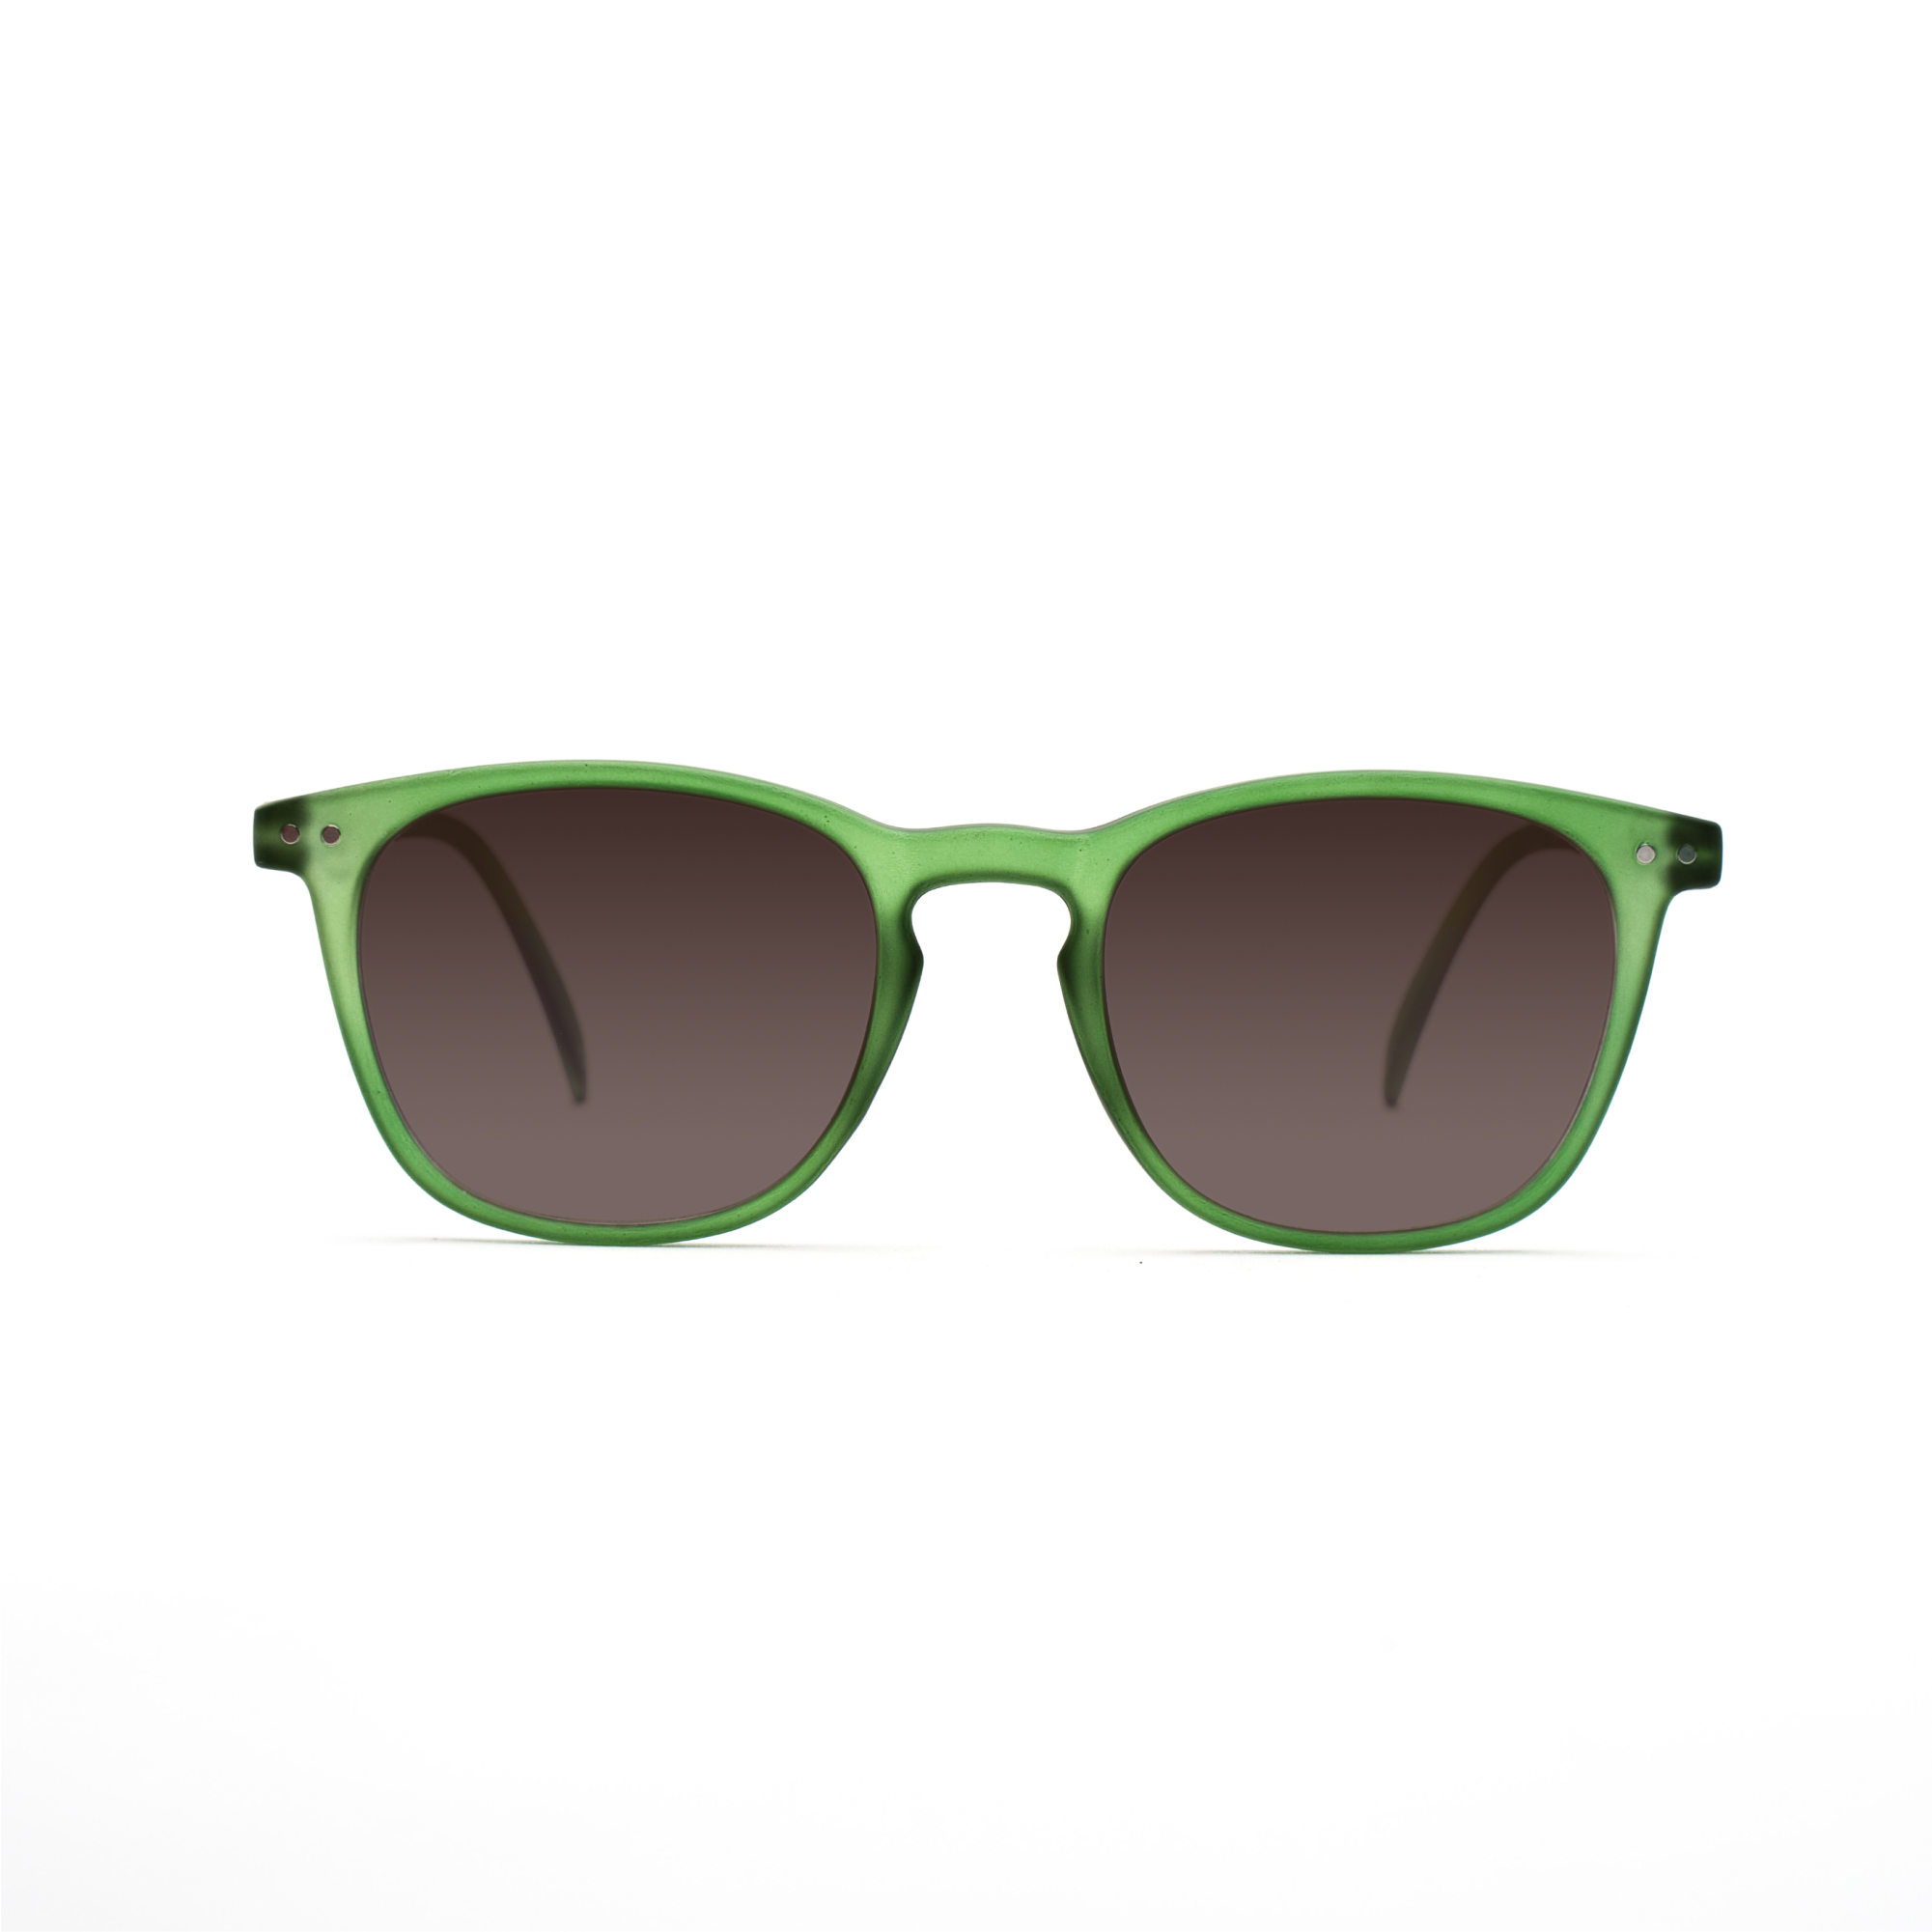 men's polarized sunglasses – William Polarised SUN m - Green